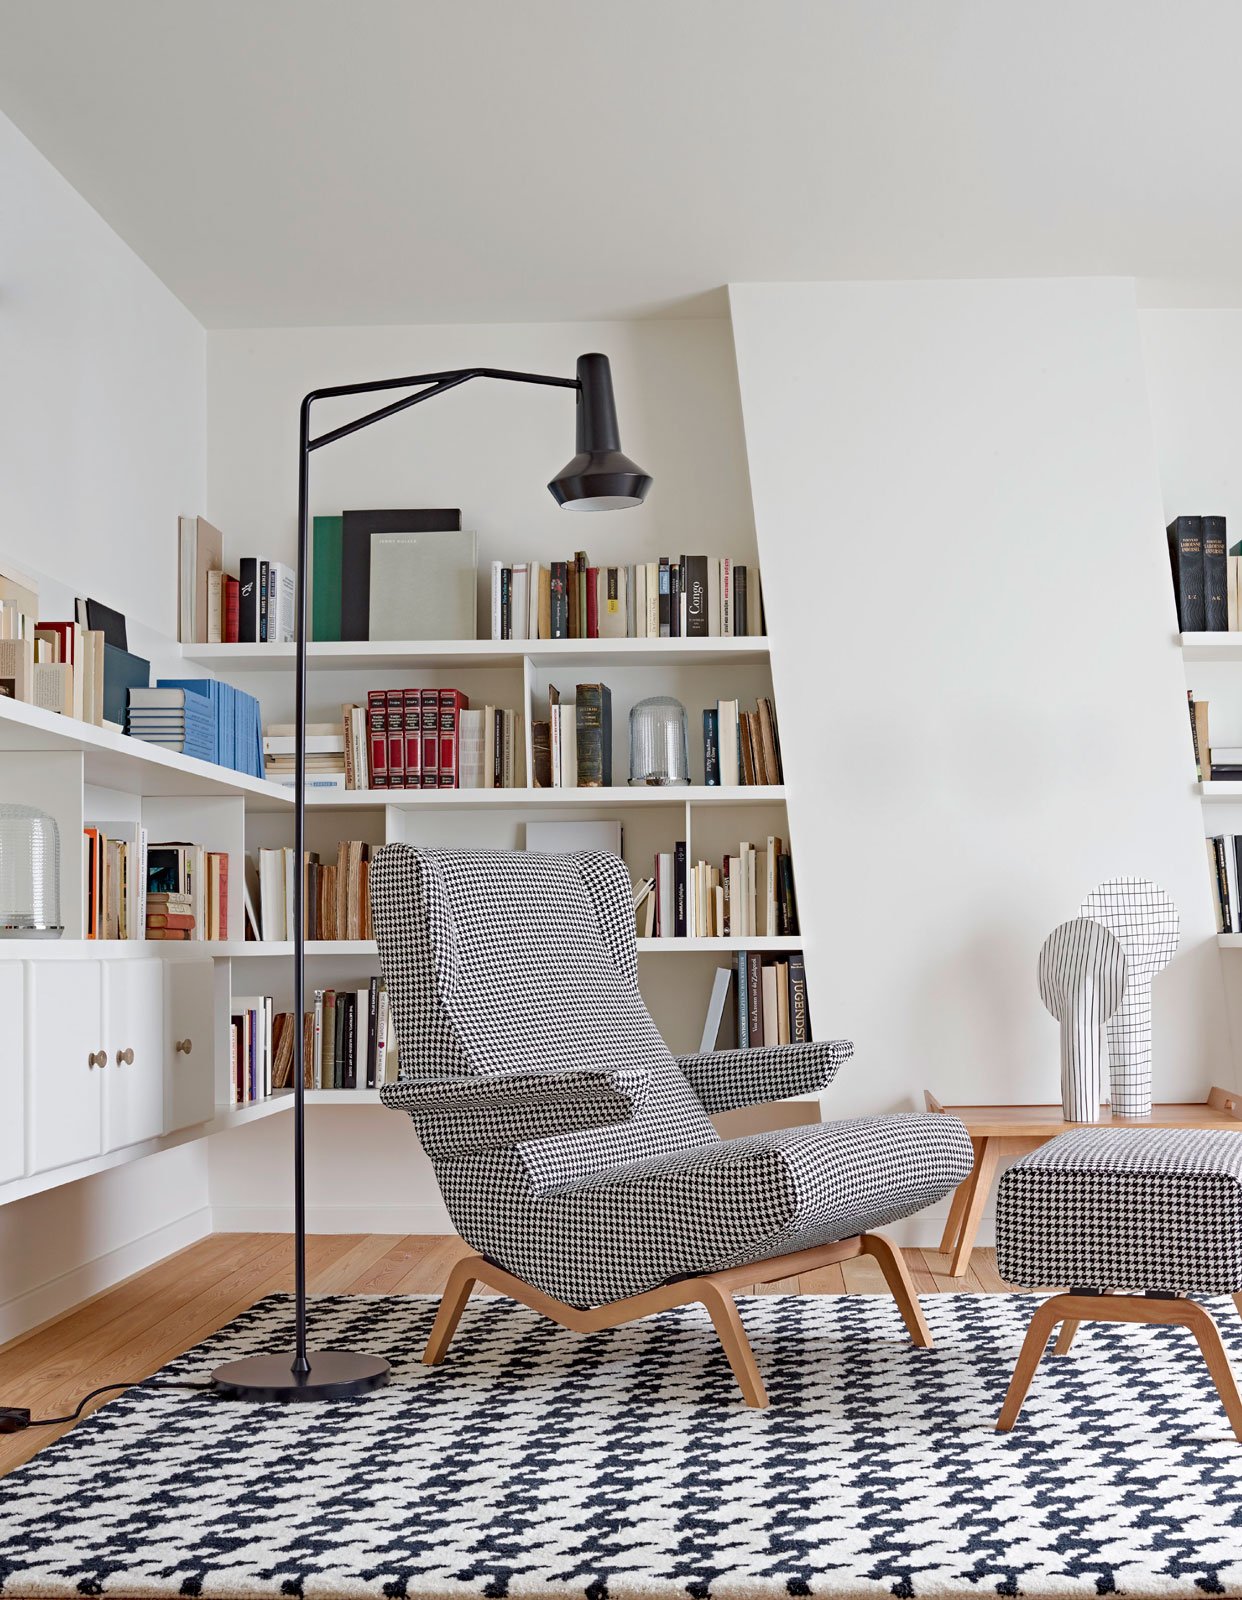 Arredare la zona lettura: scegli le soluzioni adatte al tuo spazio